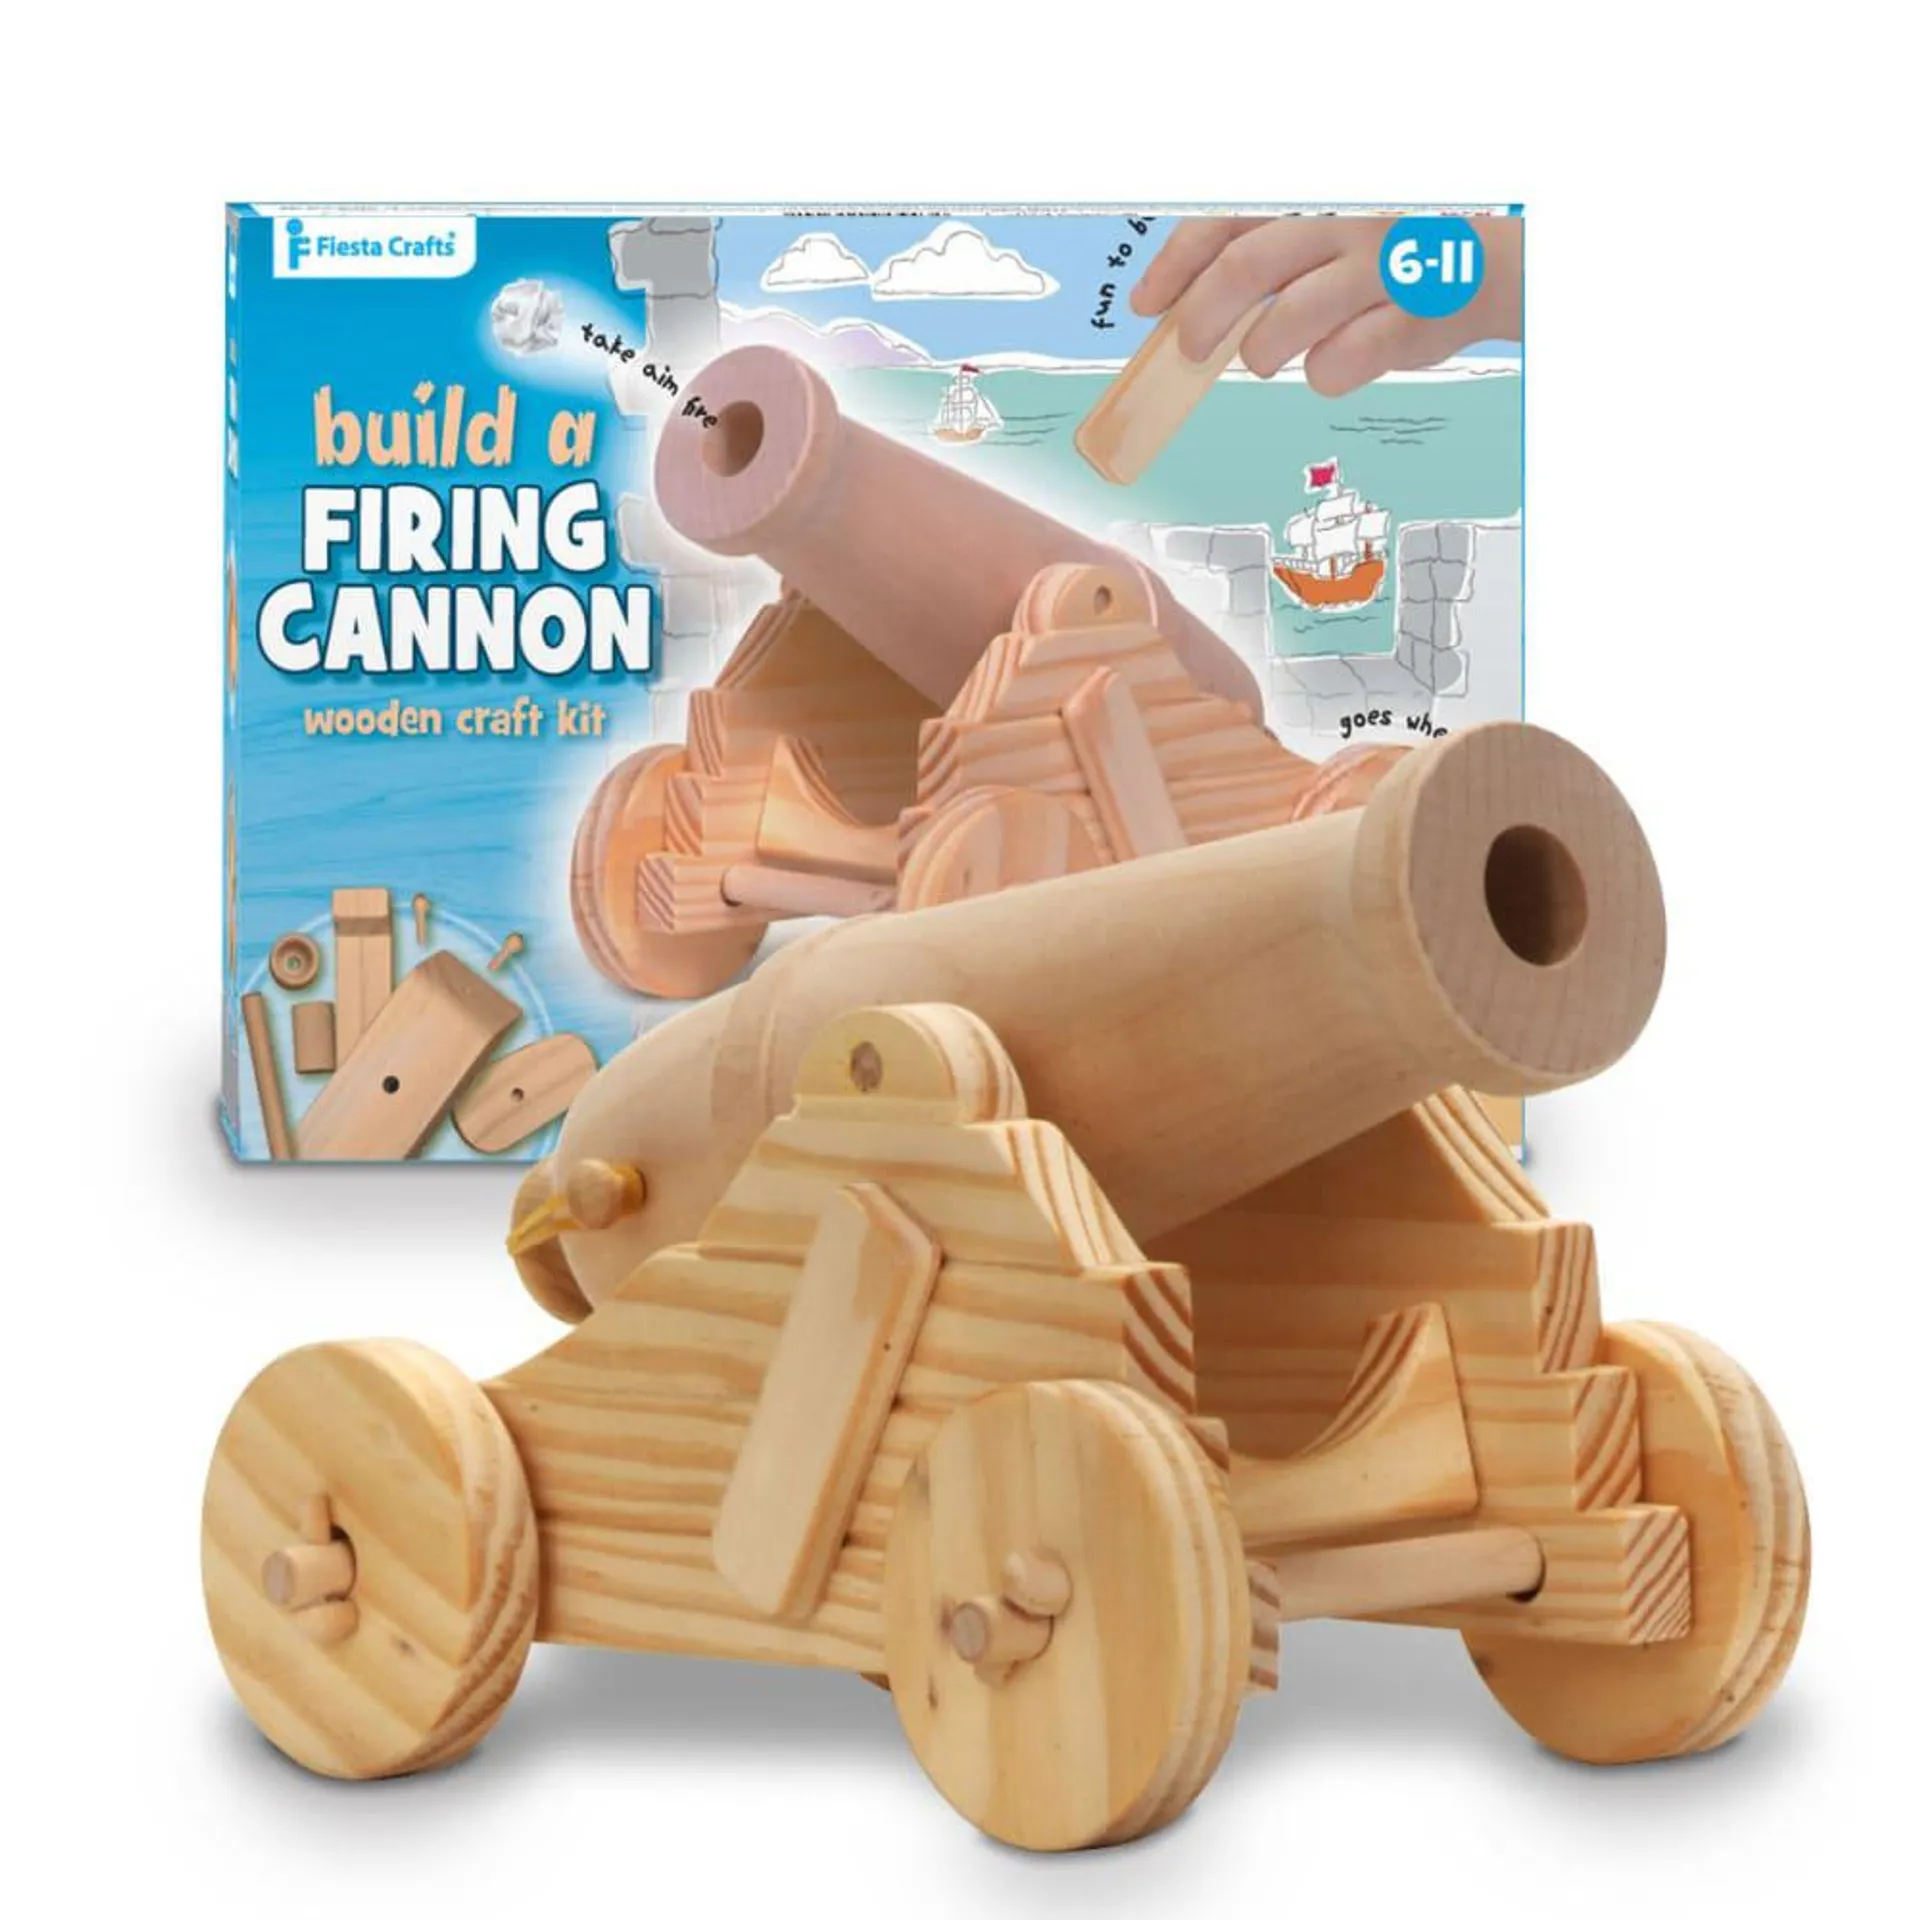 Build a Wooden Firing Canon Kit